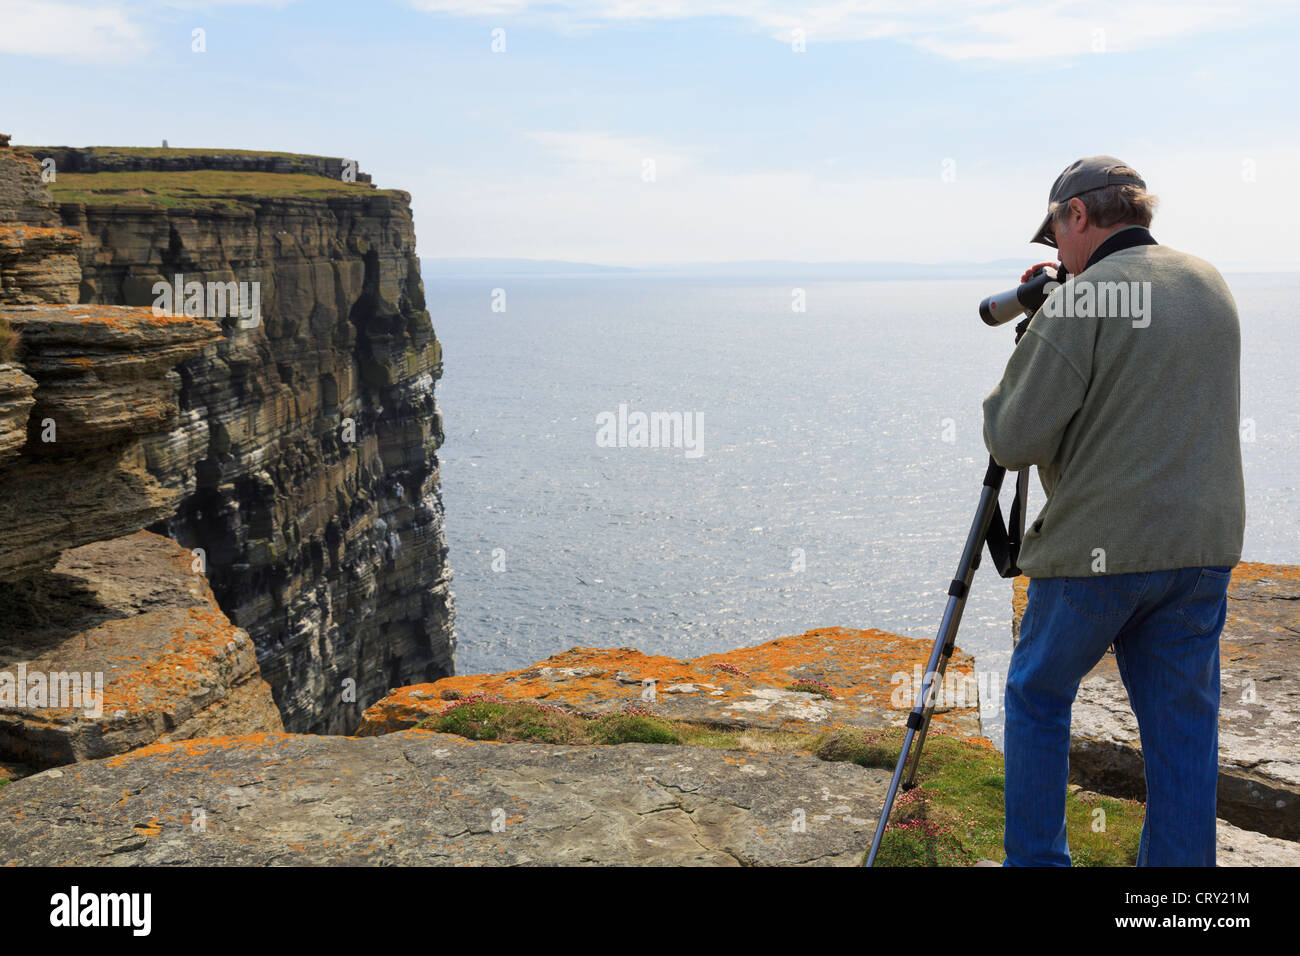 Vogelbeobachter mit einem Teleskop, Papageientaucher und Seevögel nisten auf Seacliffs Noupe Kopf Westray Insel Orkney Islands UK zu sehen Stockfoto